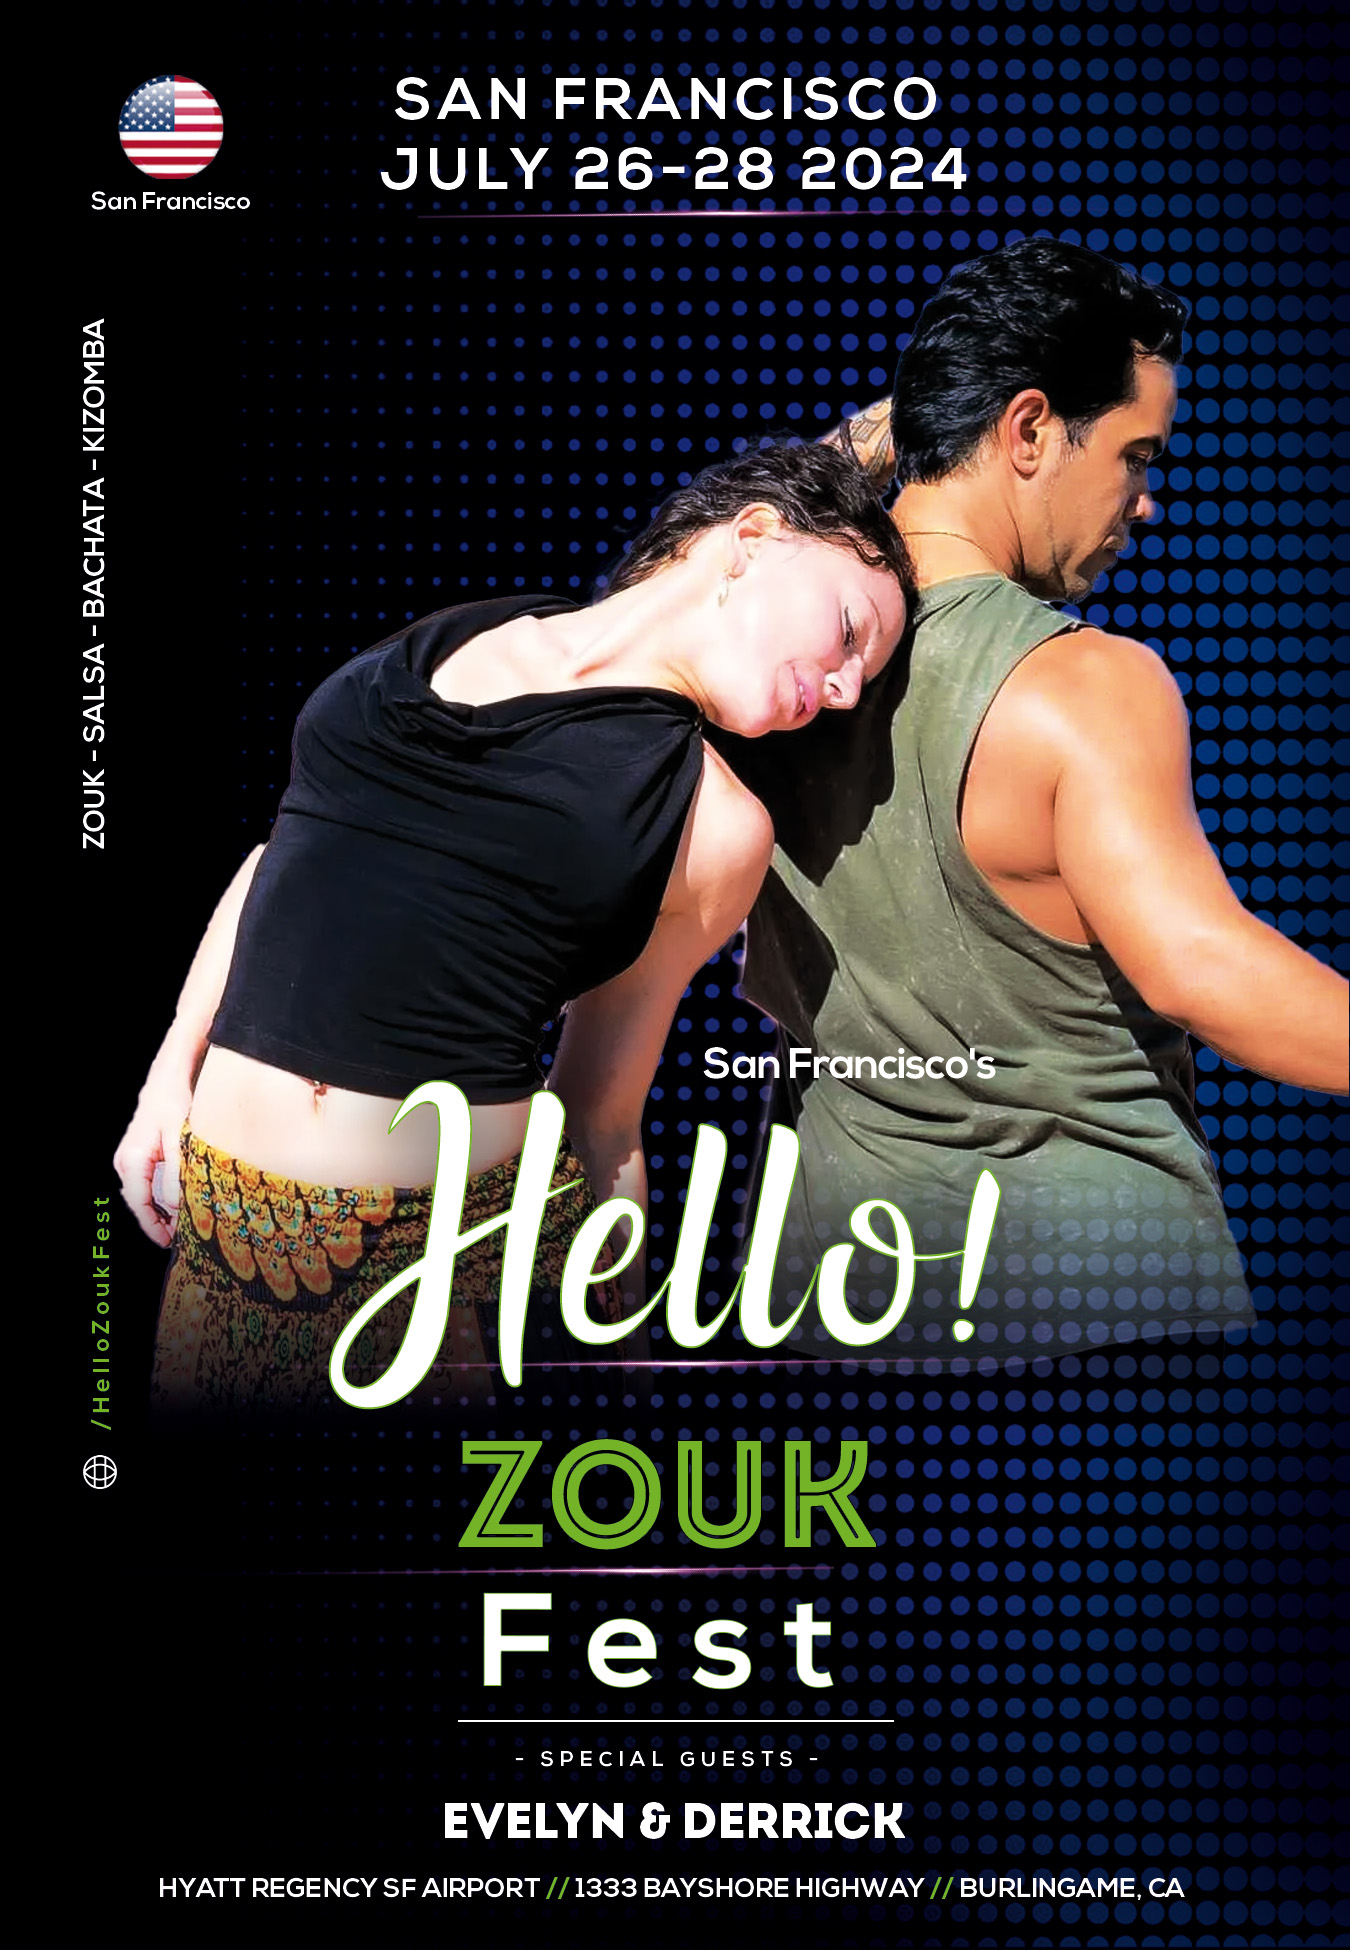 Hello Zouk Fest - Evelyn & Derrick